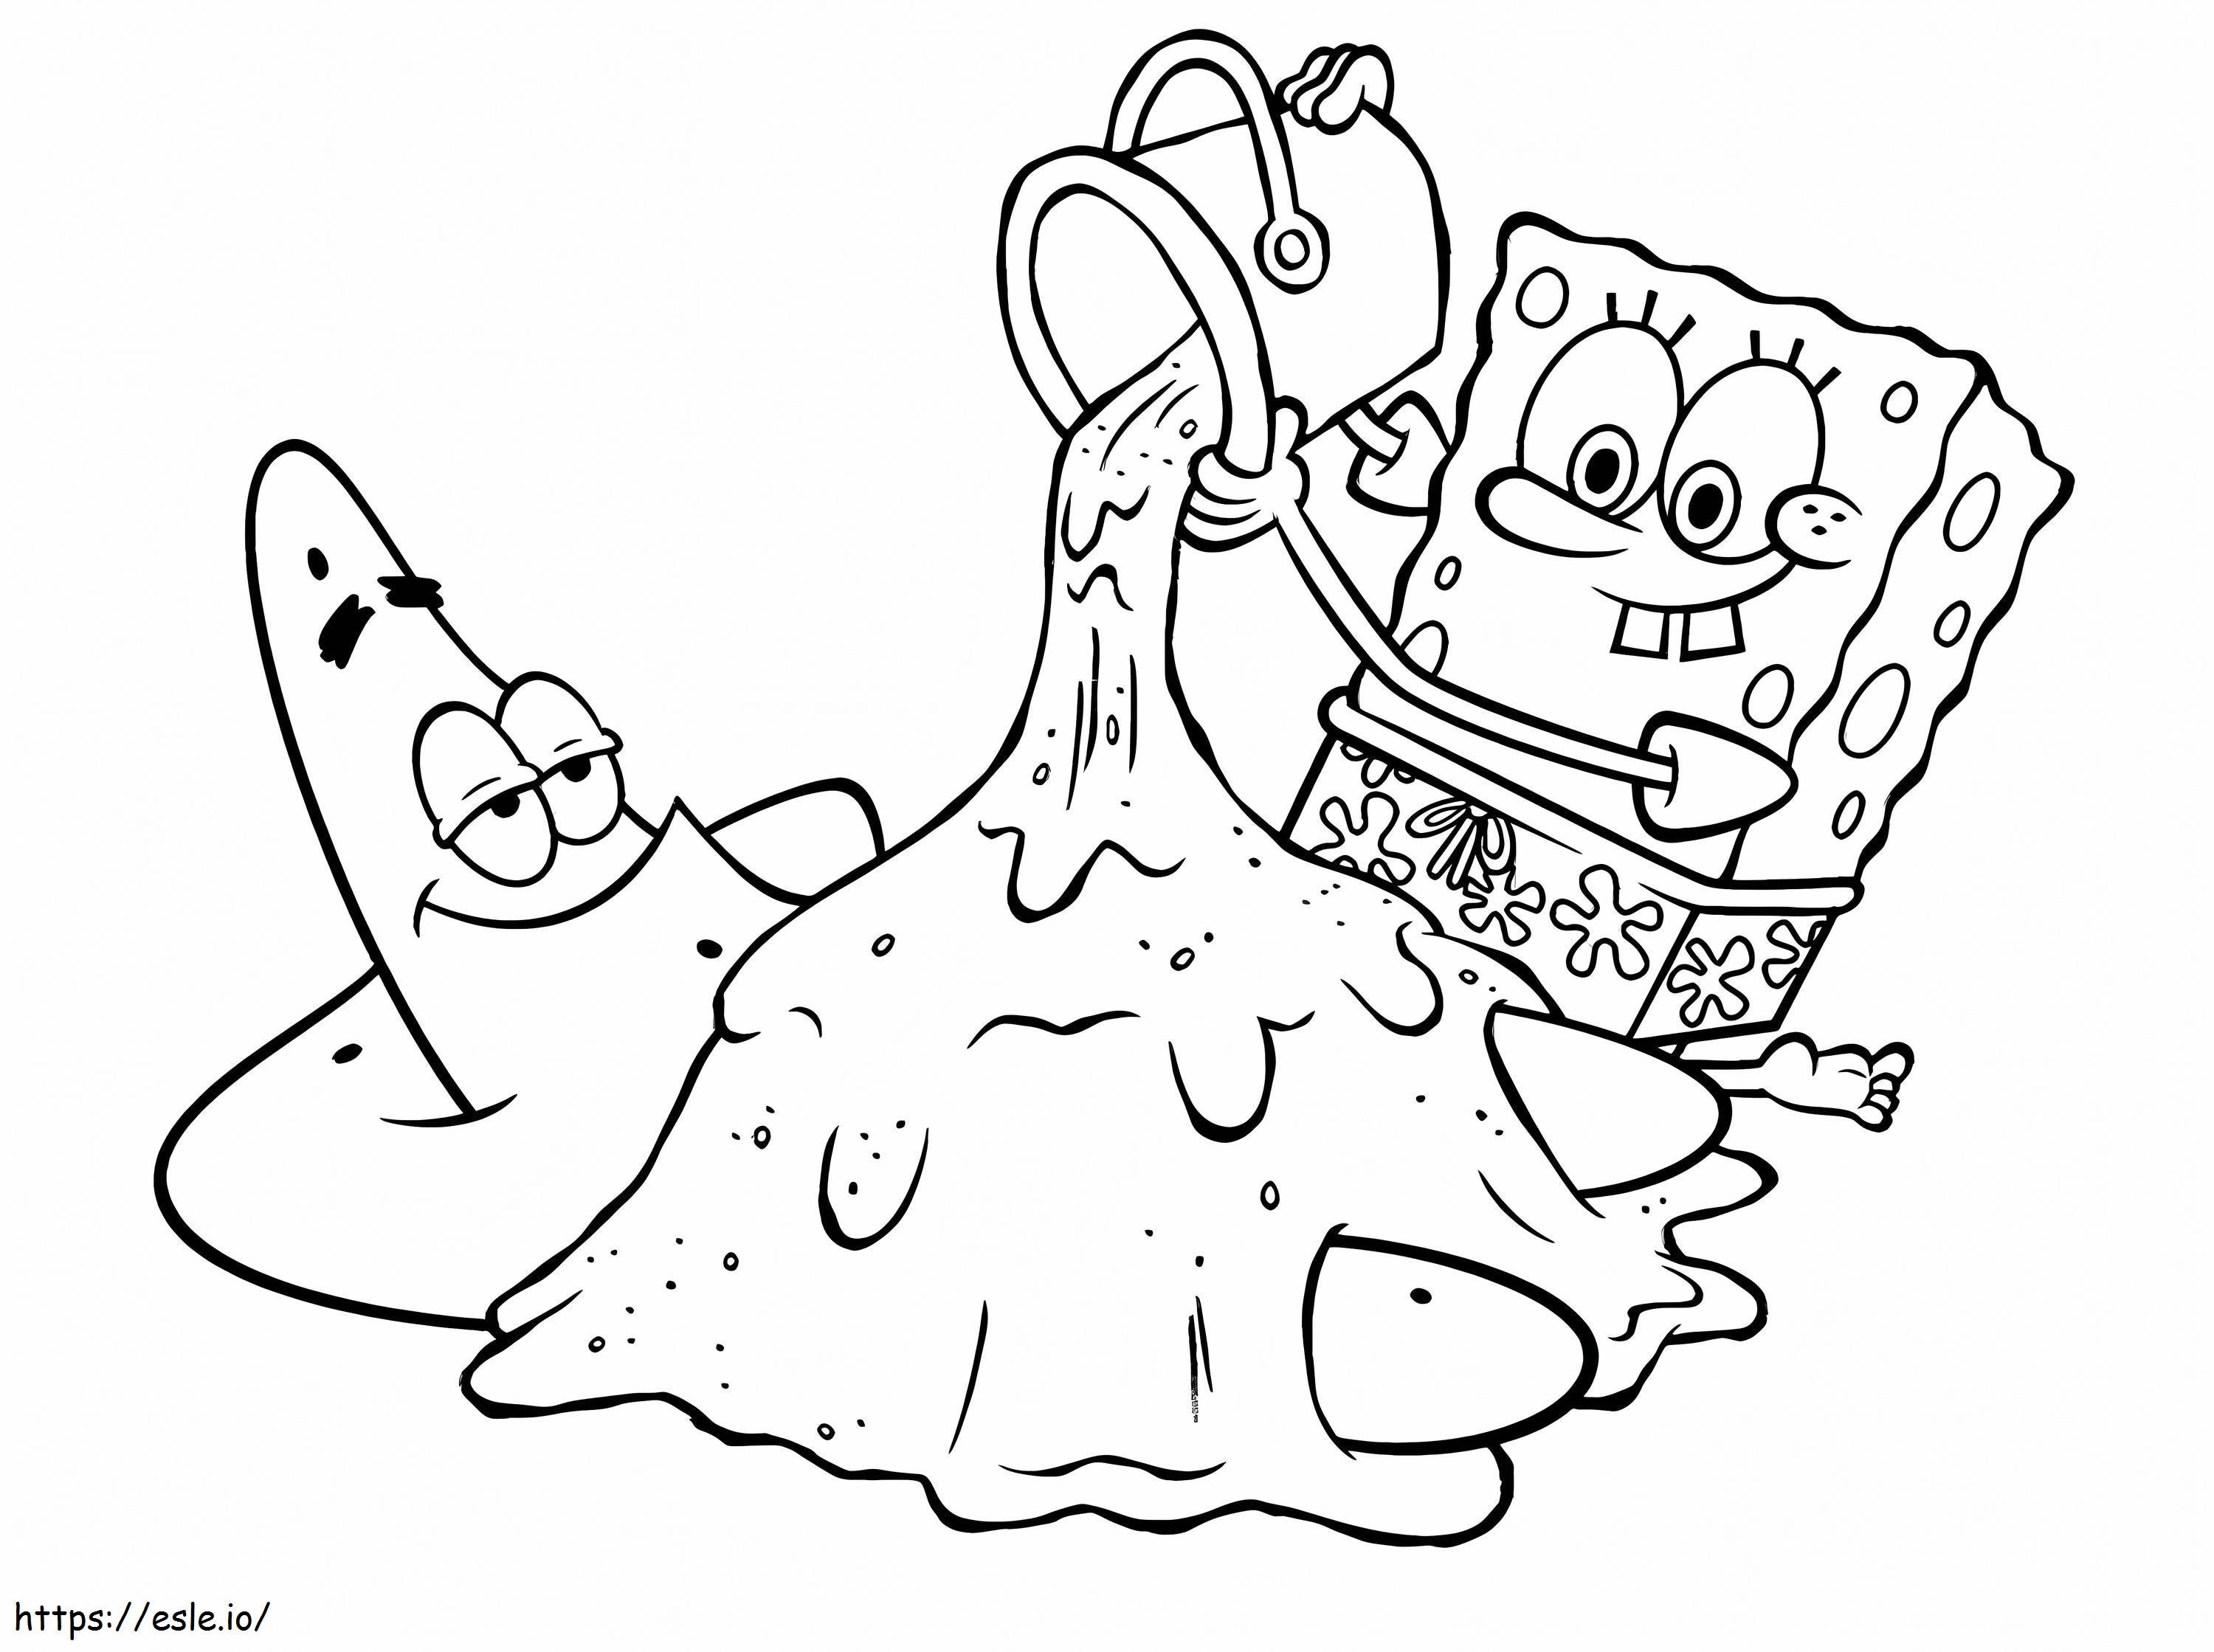 Spongebob e Patrick divertenti da colorare